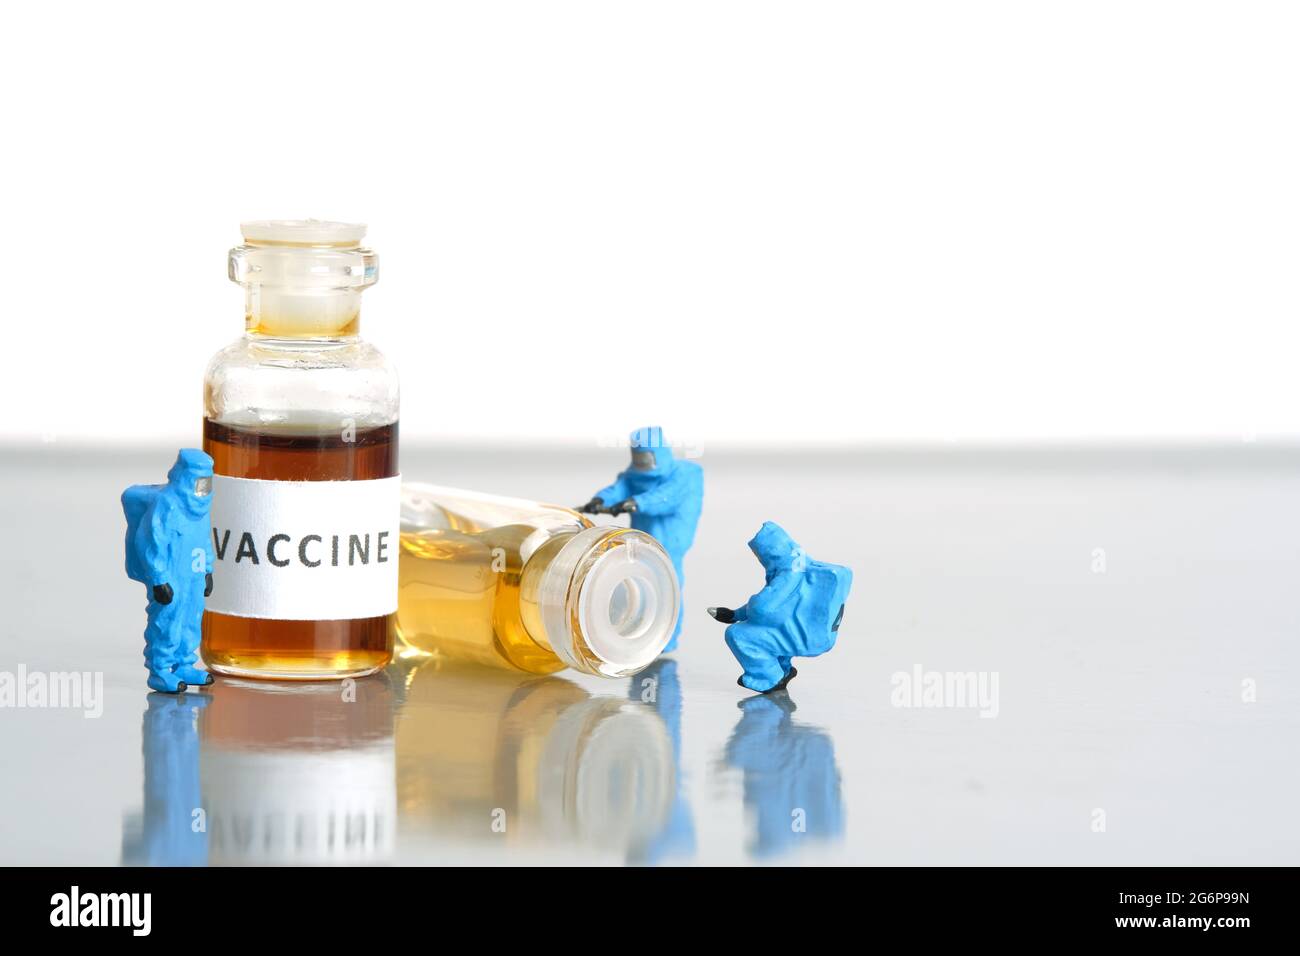 Miniatur Menschen Spielzeug Figur Fotografie. Test mit klinischen Impfstofftests. Eine Gruppe von Sanitätern mit einem Hasmatanzüge, der Impfampulle testet. Bildfoto Stockfoto